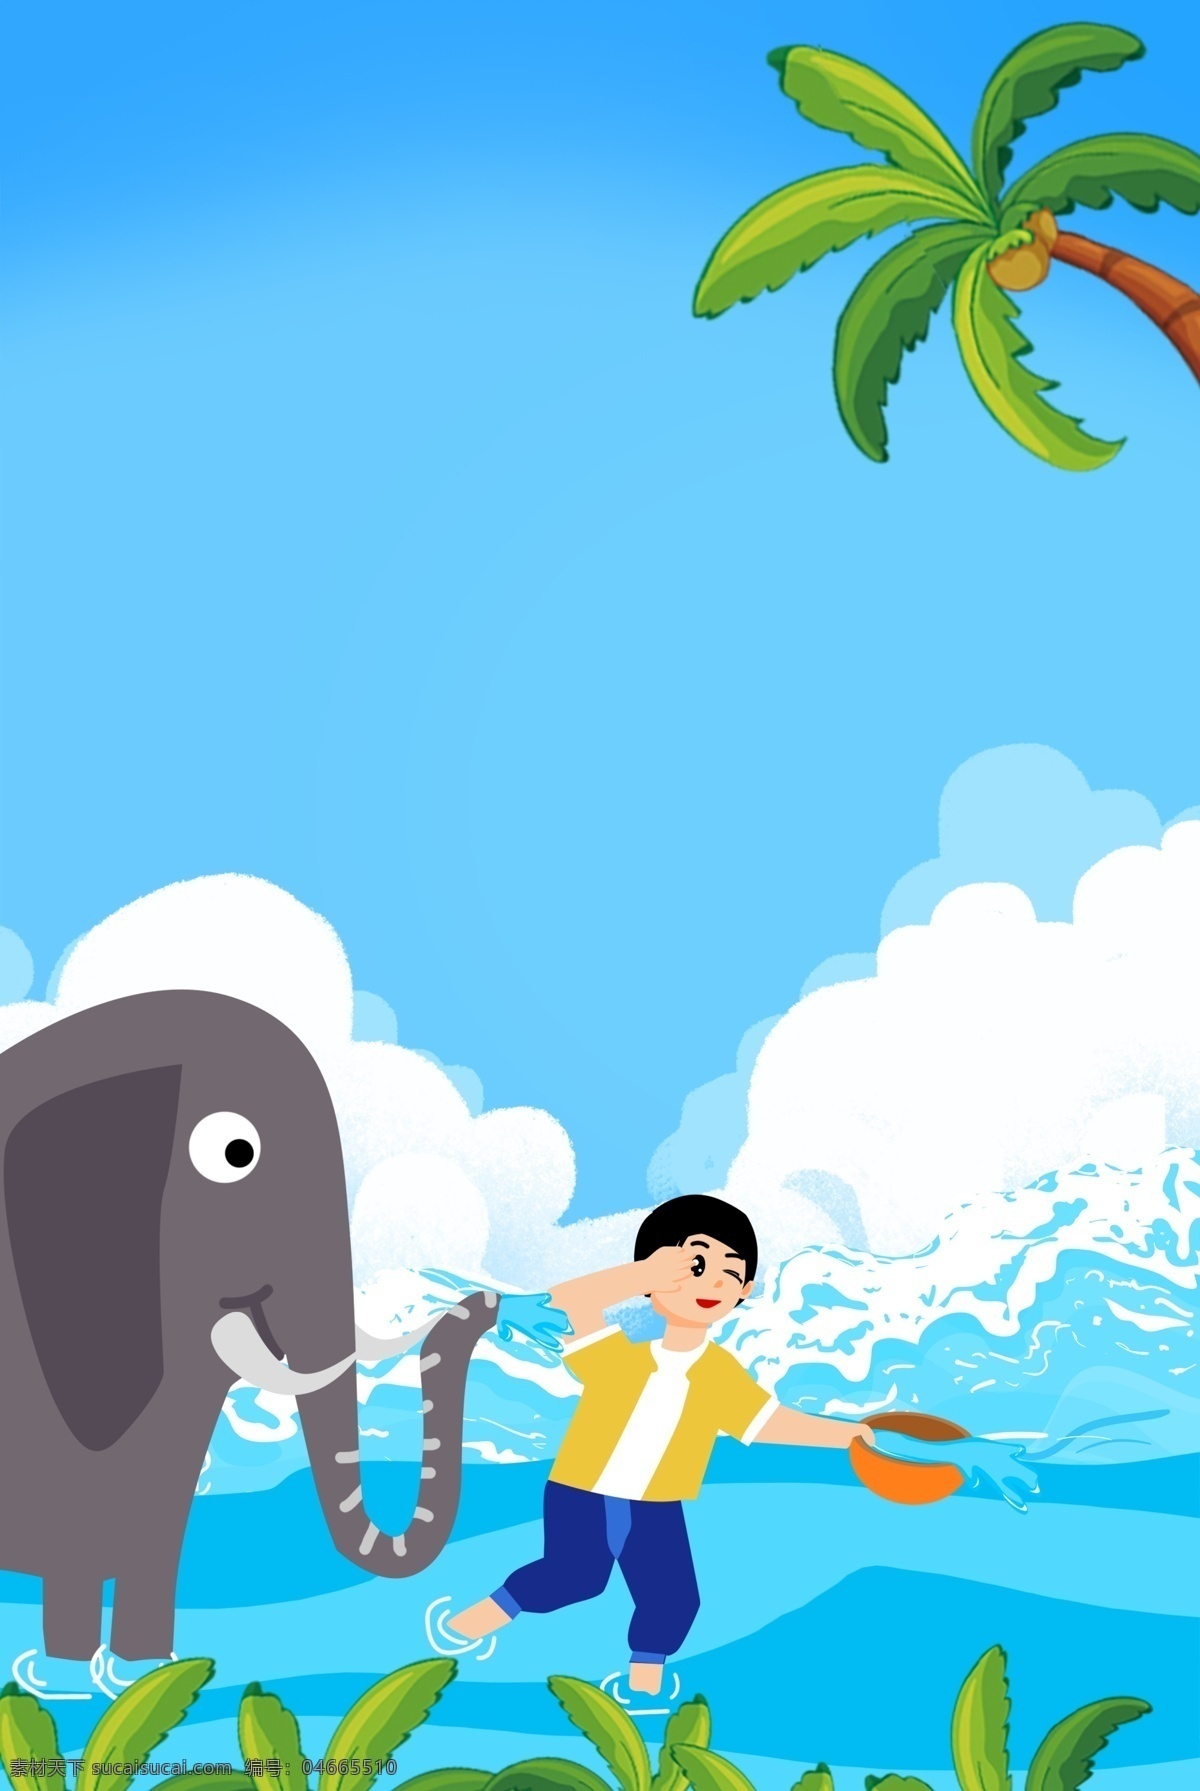 泰国 泼水节 大象 清新 卡通 海报 泼水狂欢节 泰国风俗 民族风情 泰国泼水节